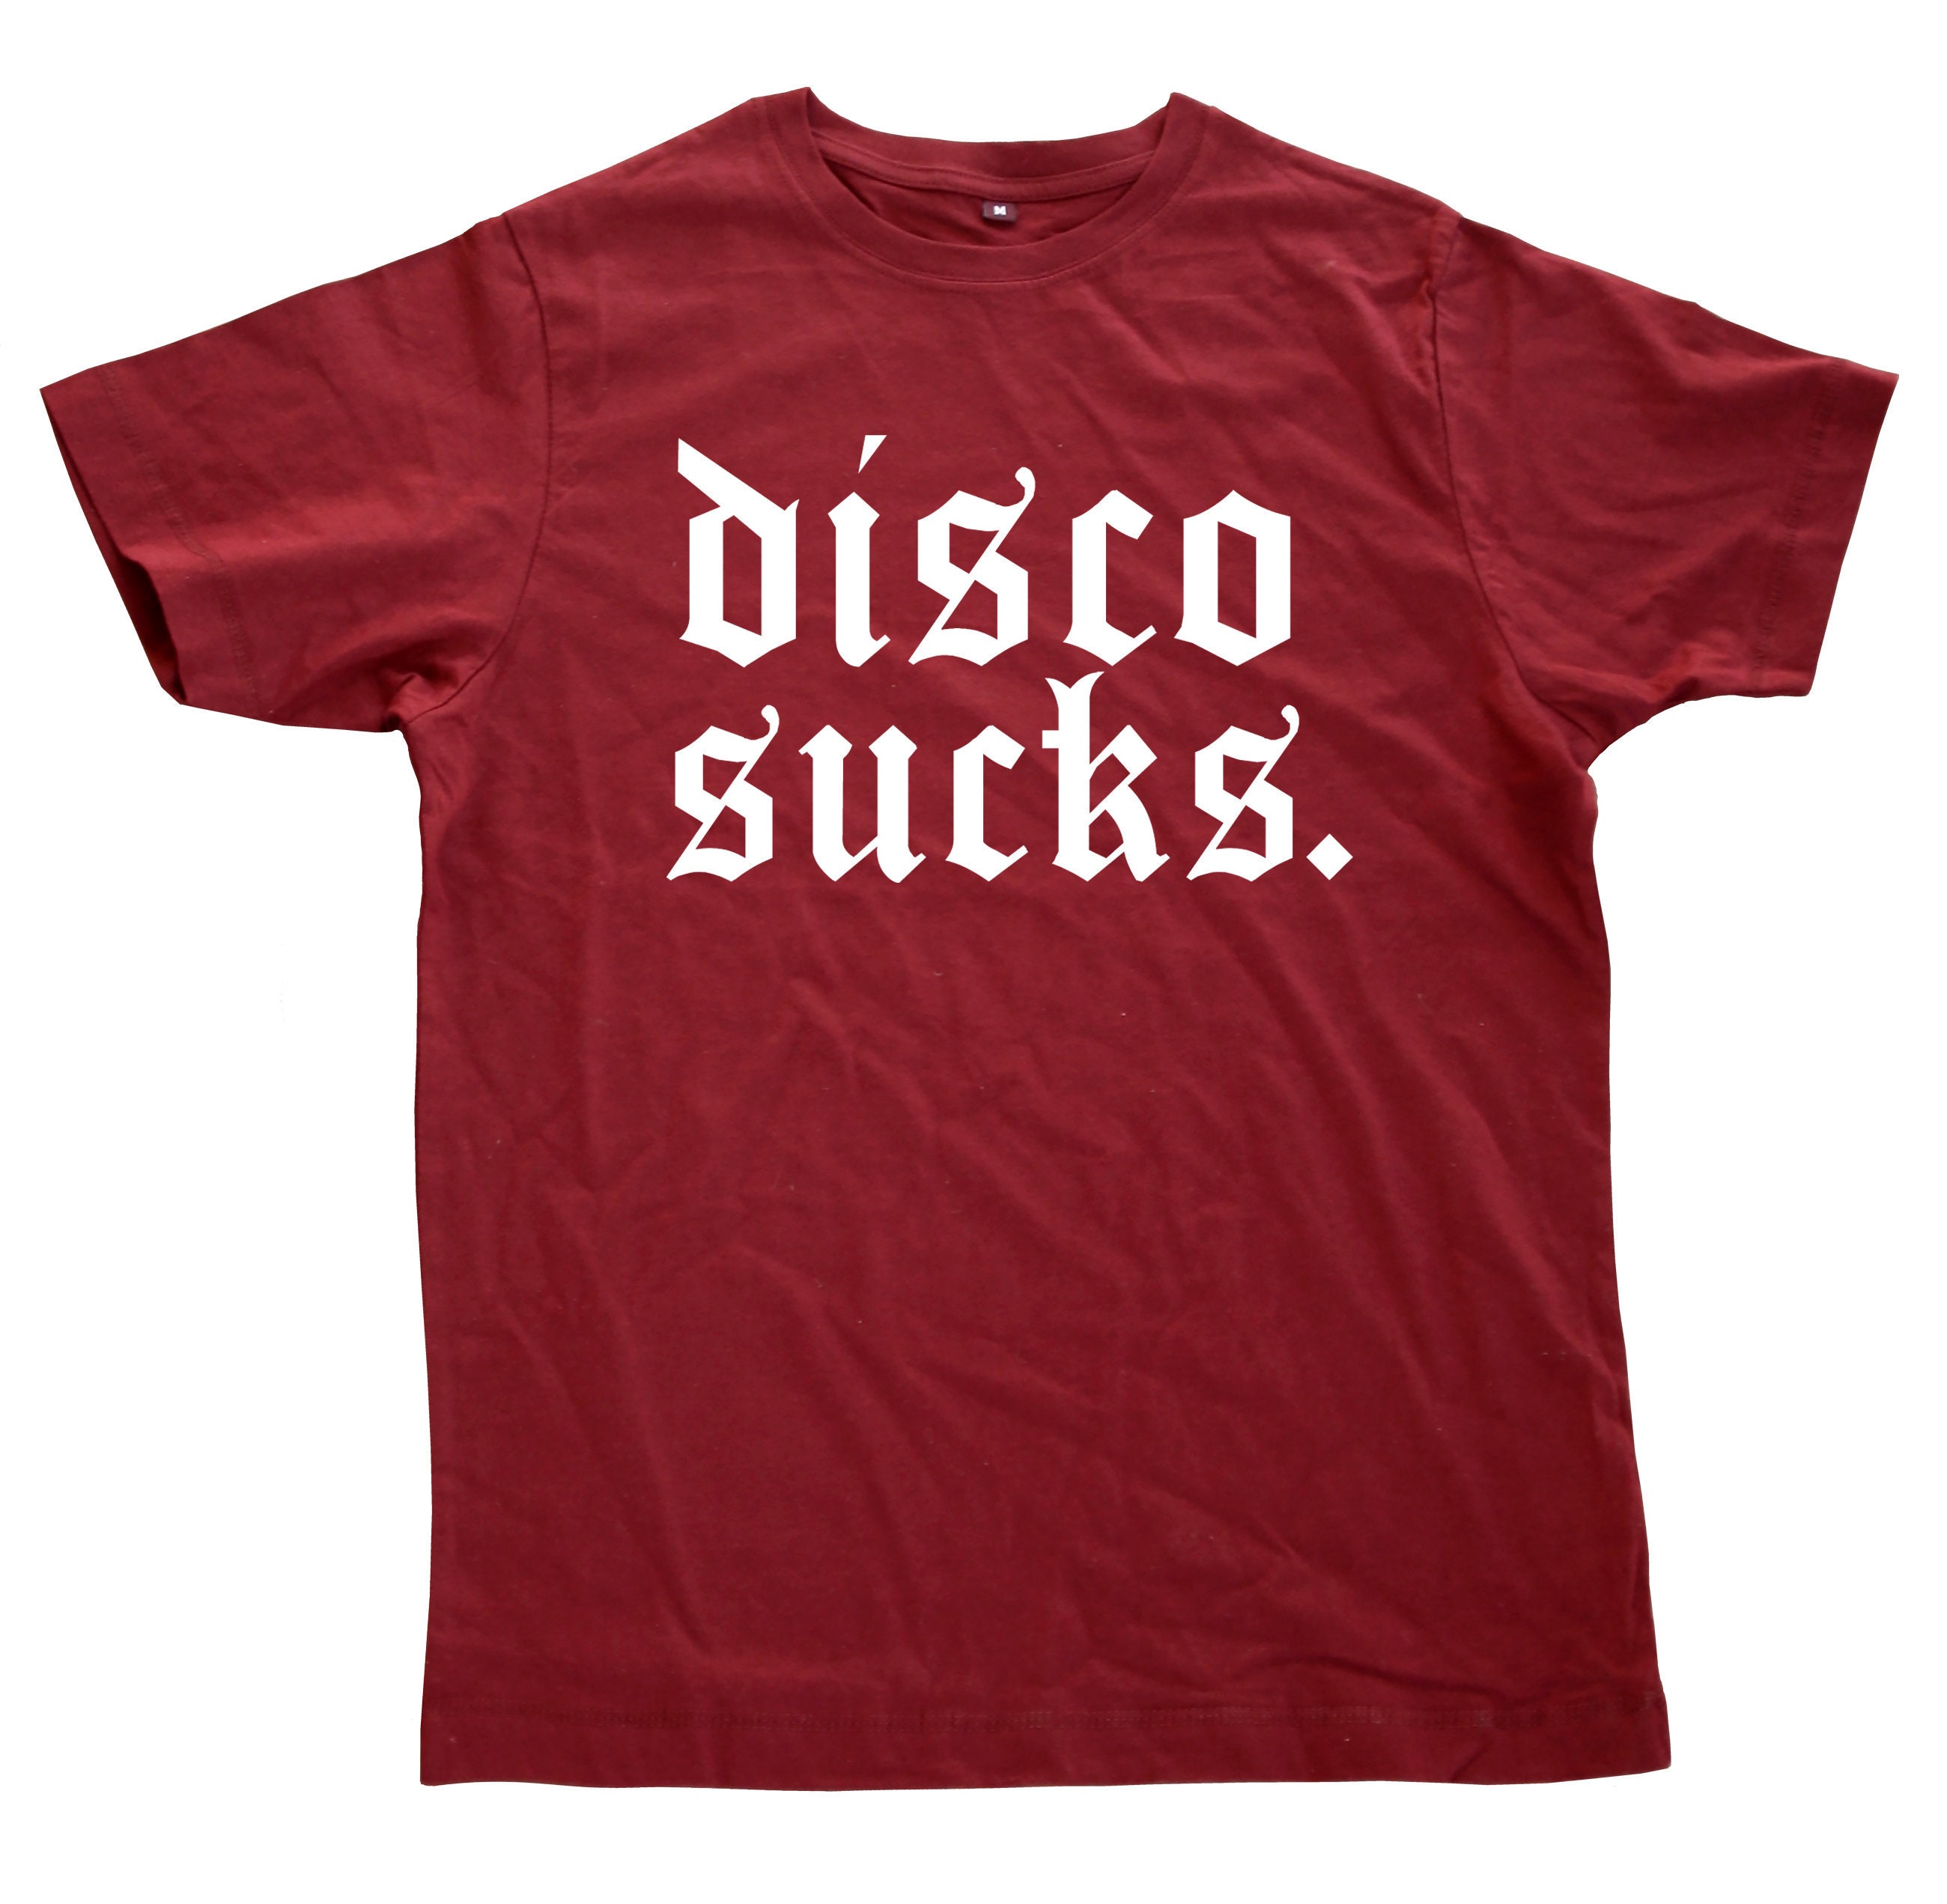 Disco sucks t shirt - Etsy 日本